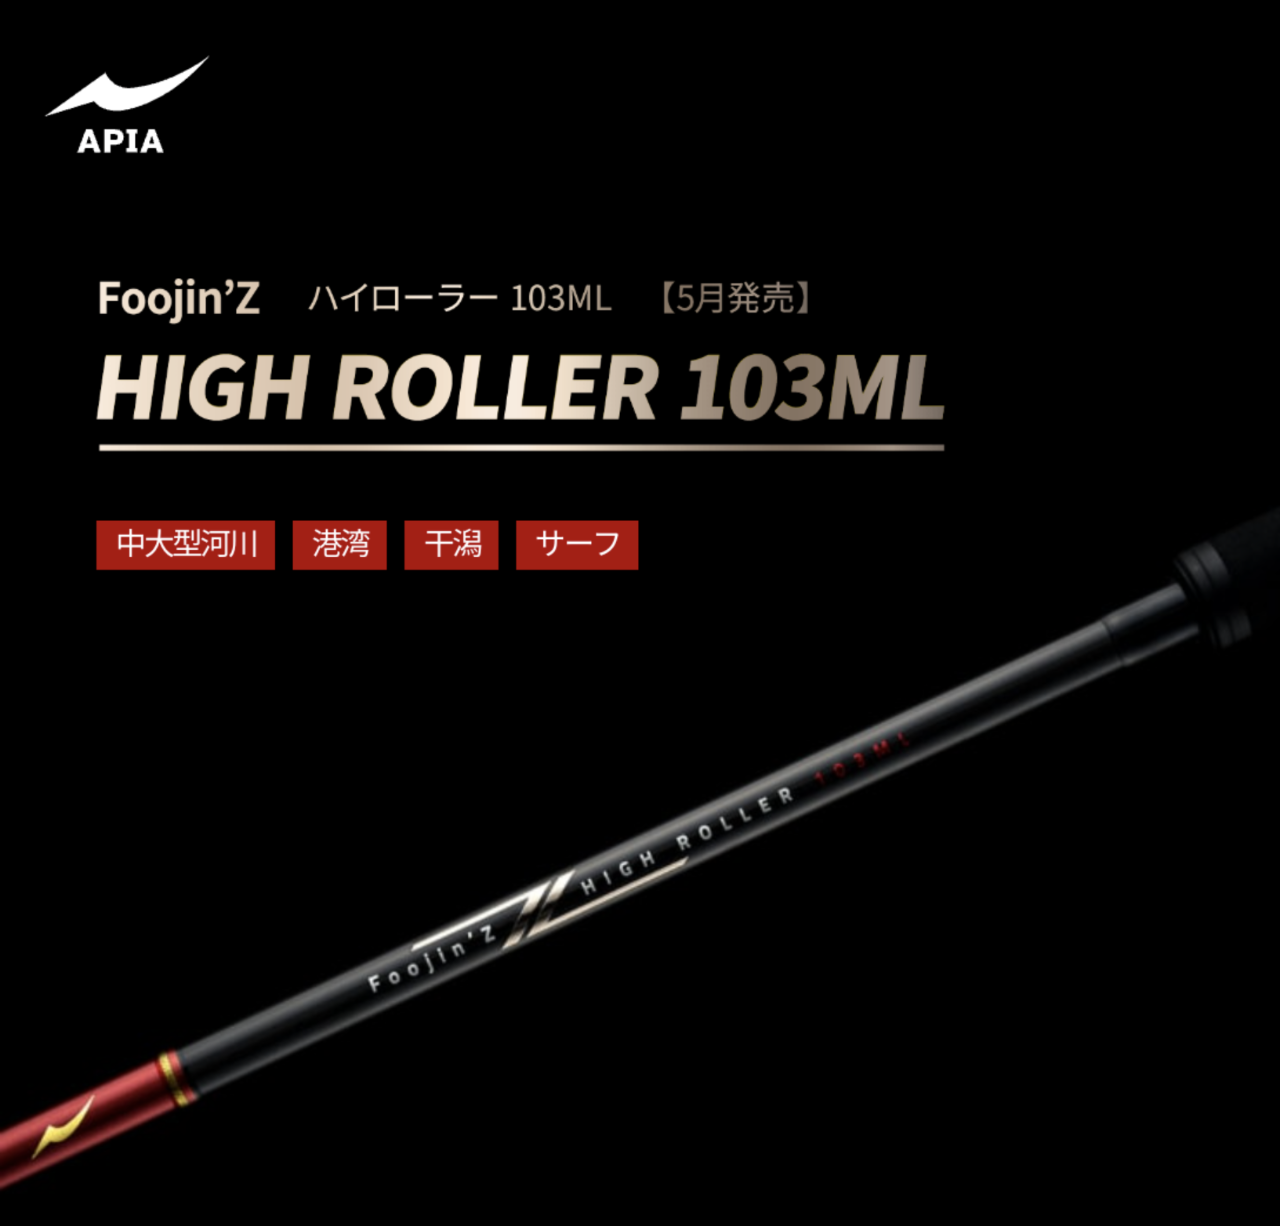 アピア Foojin'Z 5th GENERATION HIGH ROLLER 103ML ハイローラー 103ML